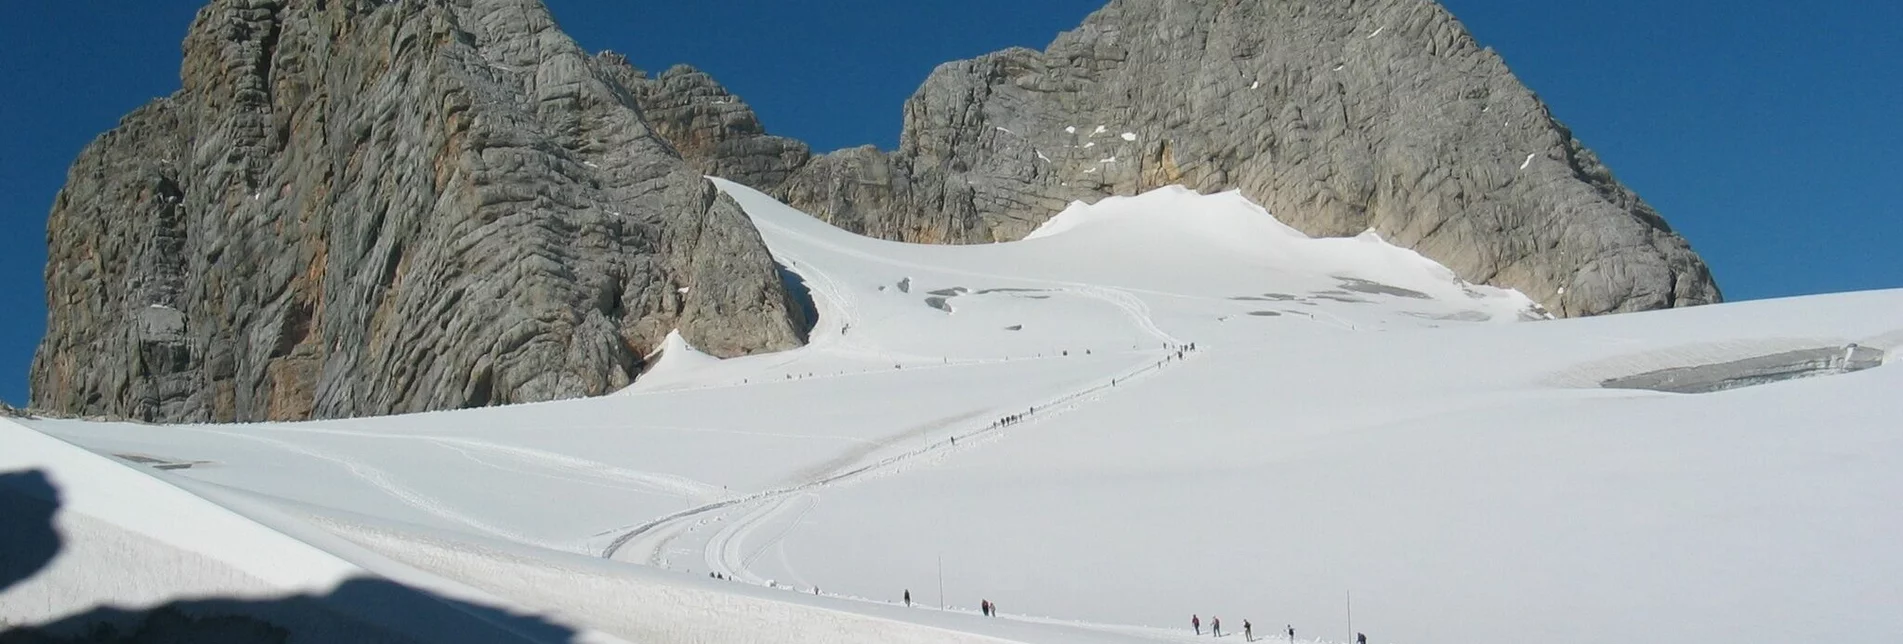 Wanderung Schneespaziergang zur Seethalerhütte - Touren-Impression #1 | © Erlebnisregion Schladming-Dachstein